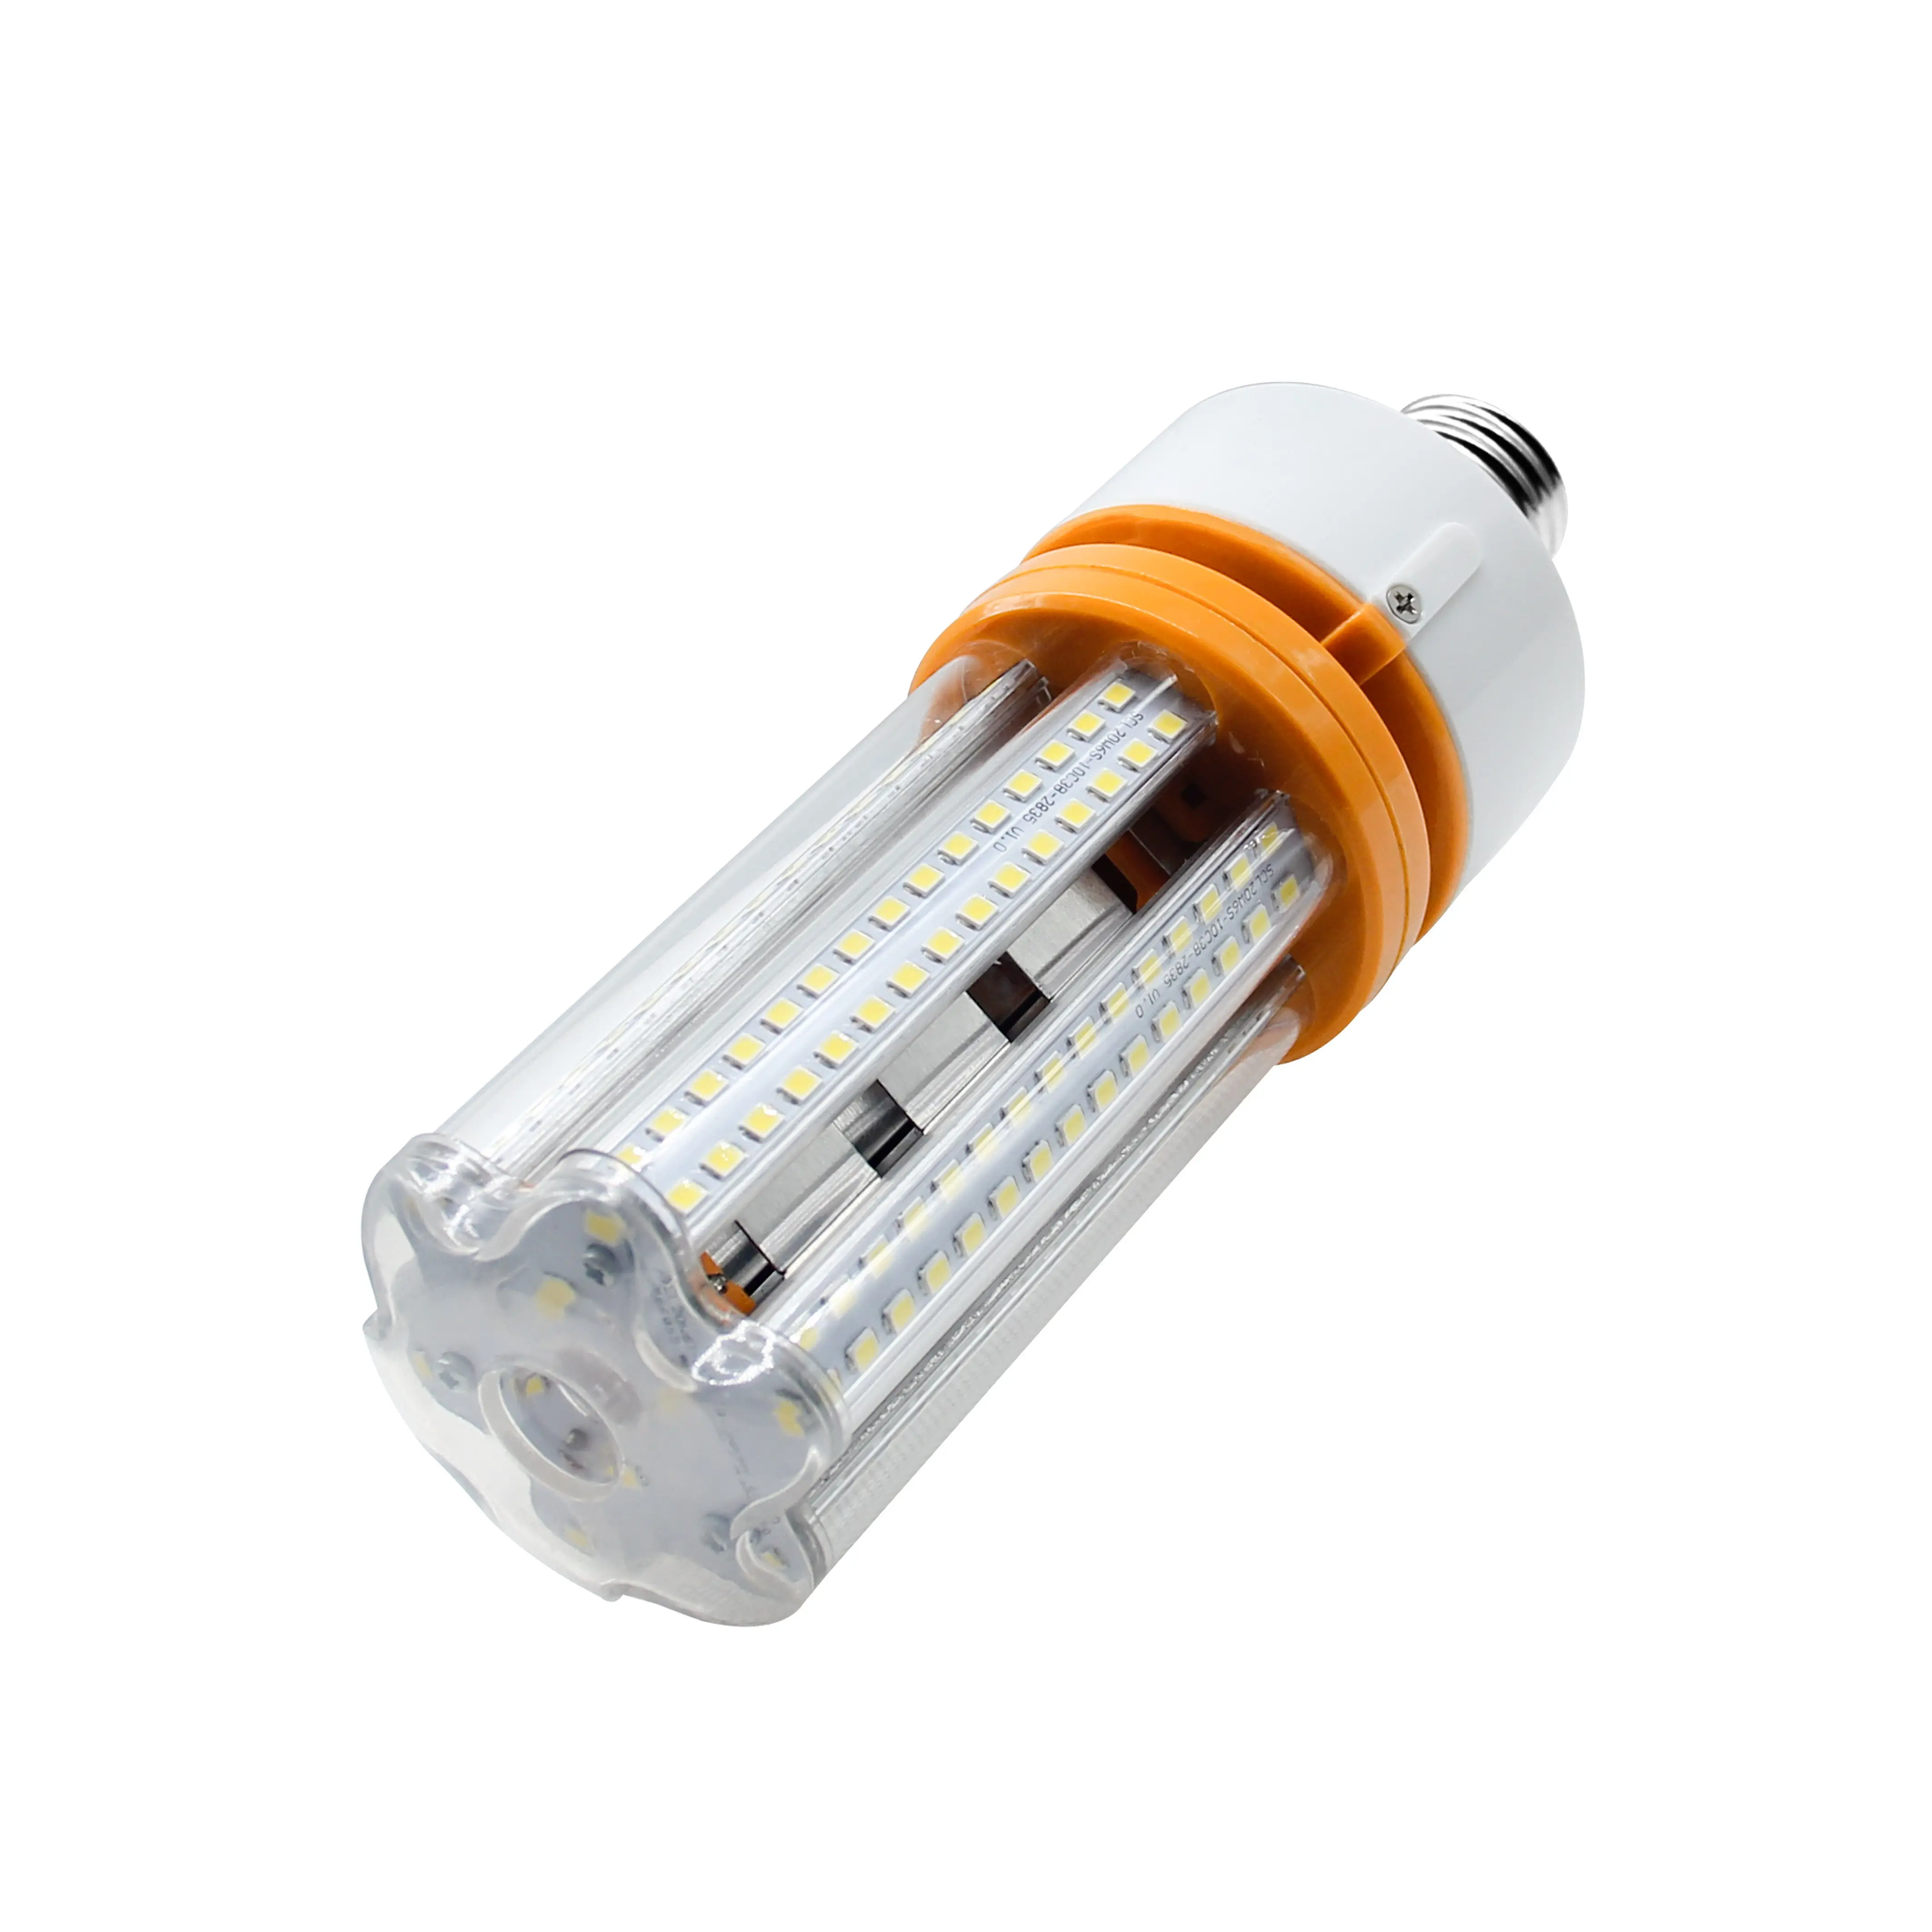 Design Led Bulb Super Quality High Lumen E27 E40 Led Bulb 10w 15w 20w 30w 40w 50w 60w 80w 100w 120w 150w 200w LED Corn Bulb Light